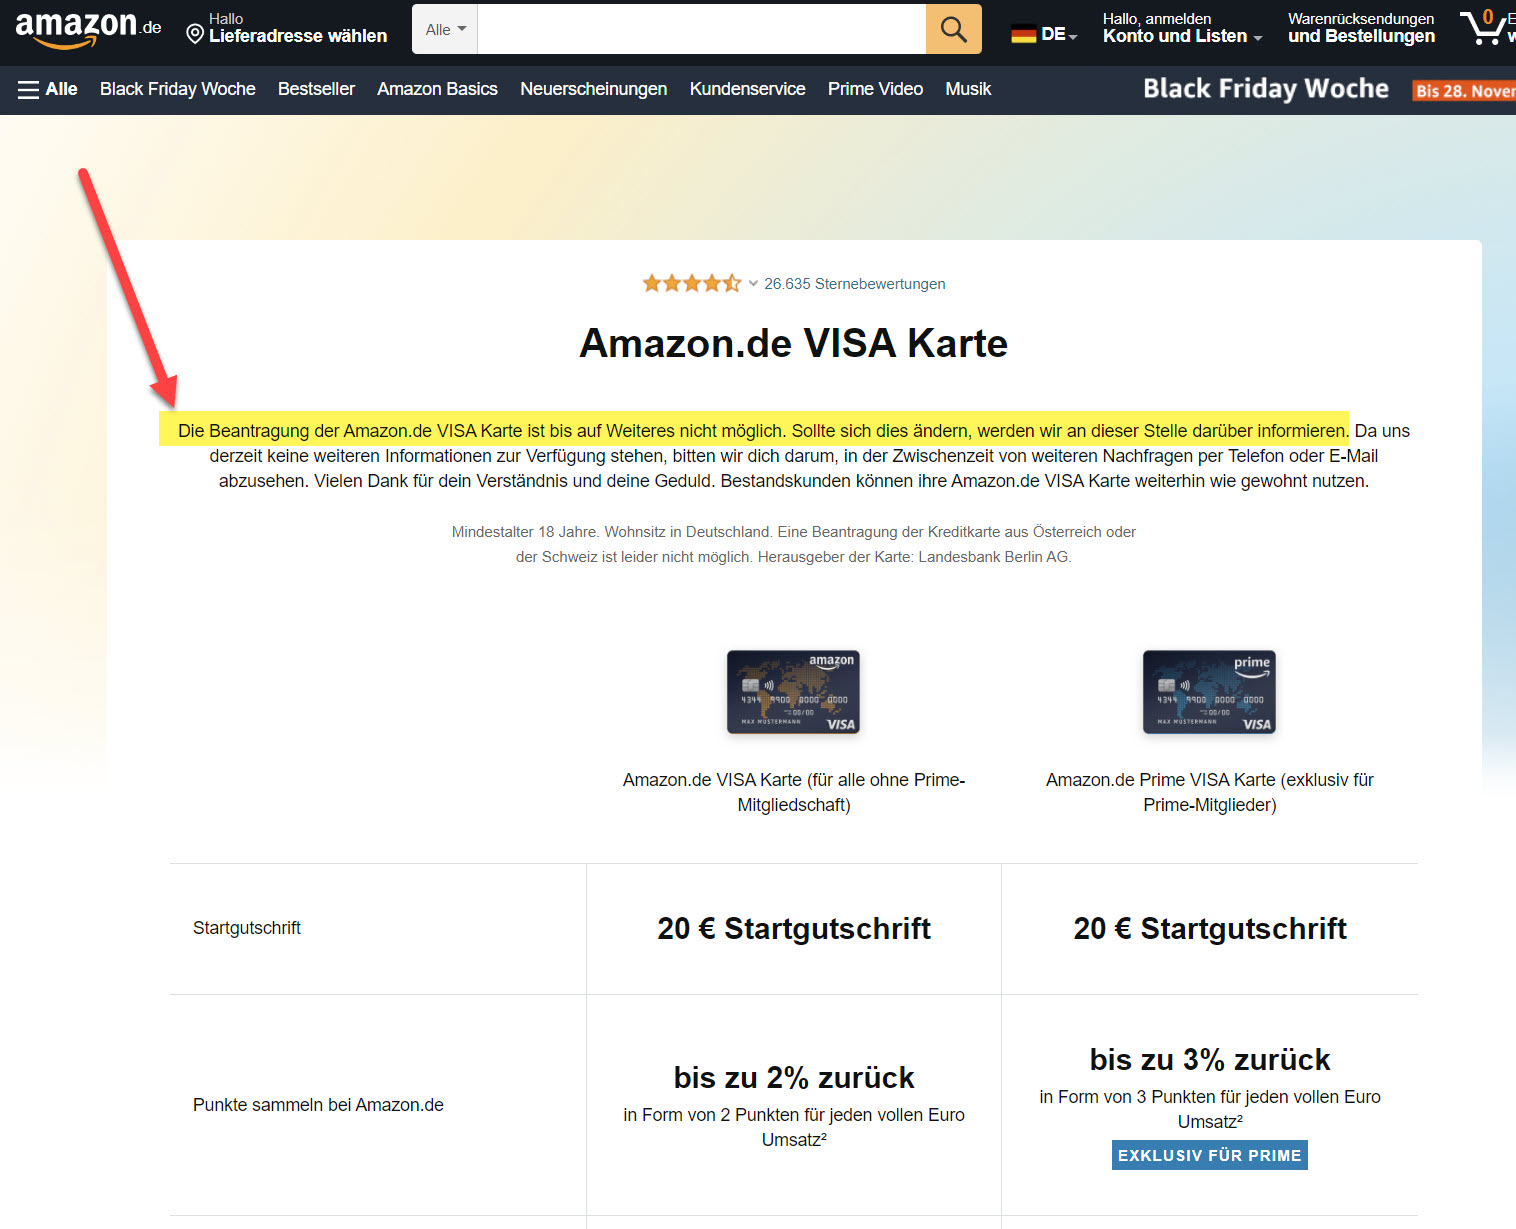 Am 22.11.2022 waren die Amazon Kreditkarten nicht mehr beantragbar. Gründe und Dauer werden nicht genannt. (Screenshot amazon.de/amazon-visa-karte/dp/B00OSAGJTY am 22.11.2022)